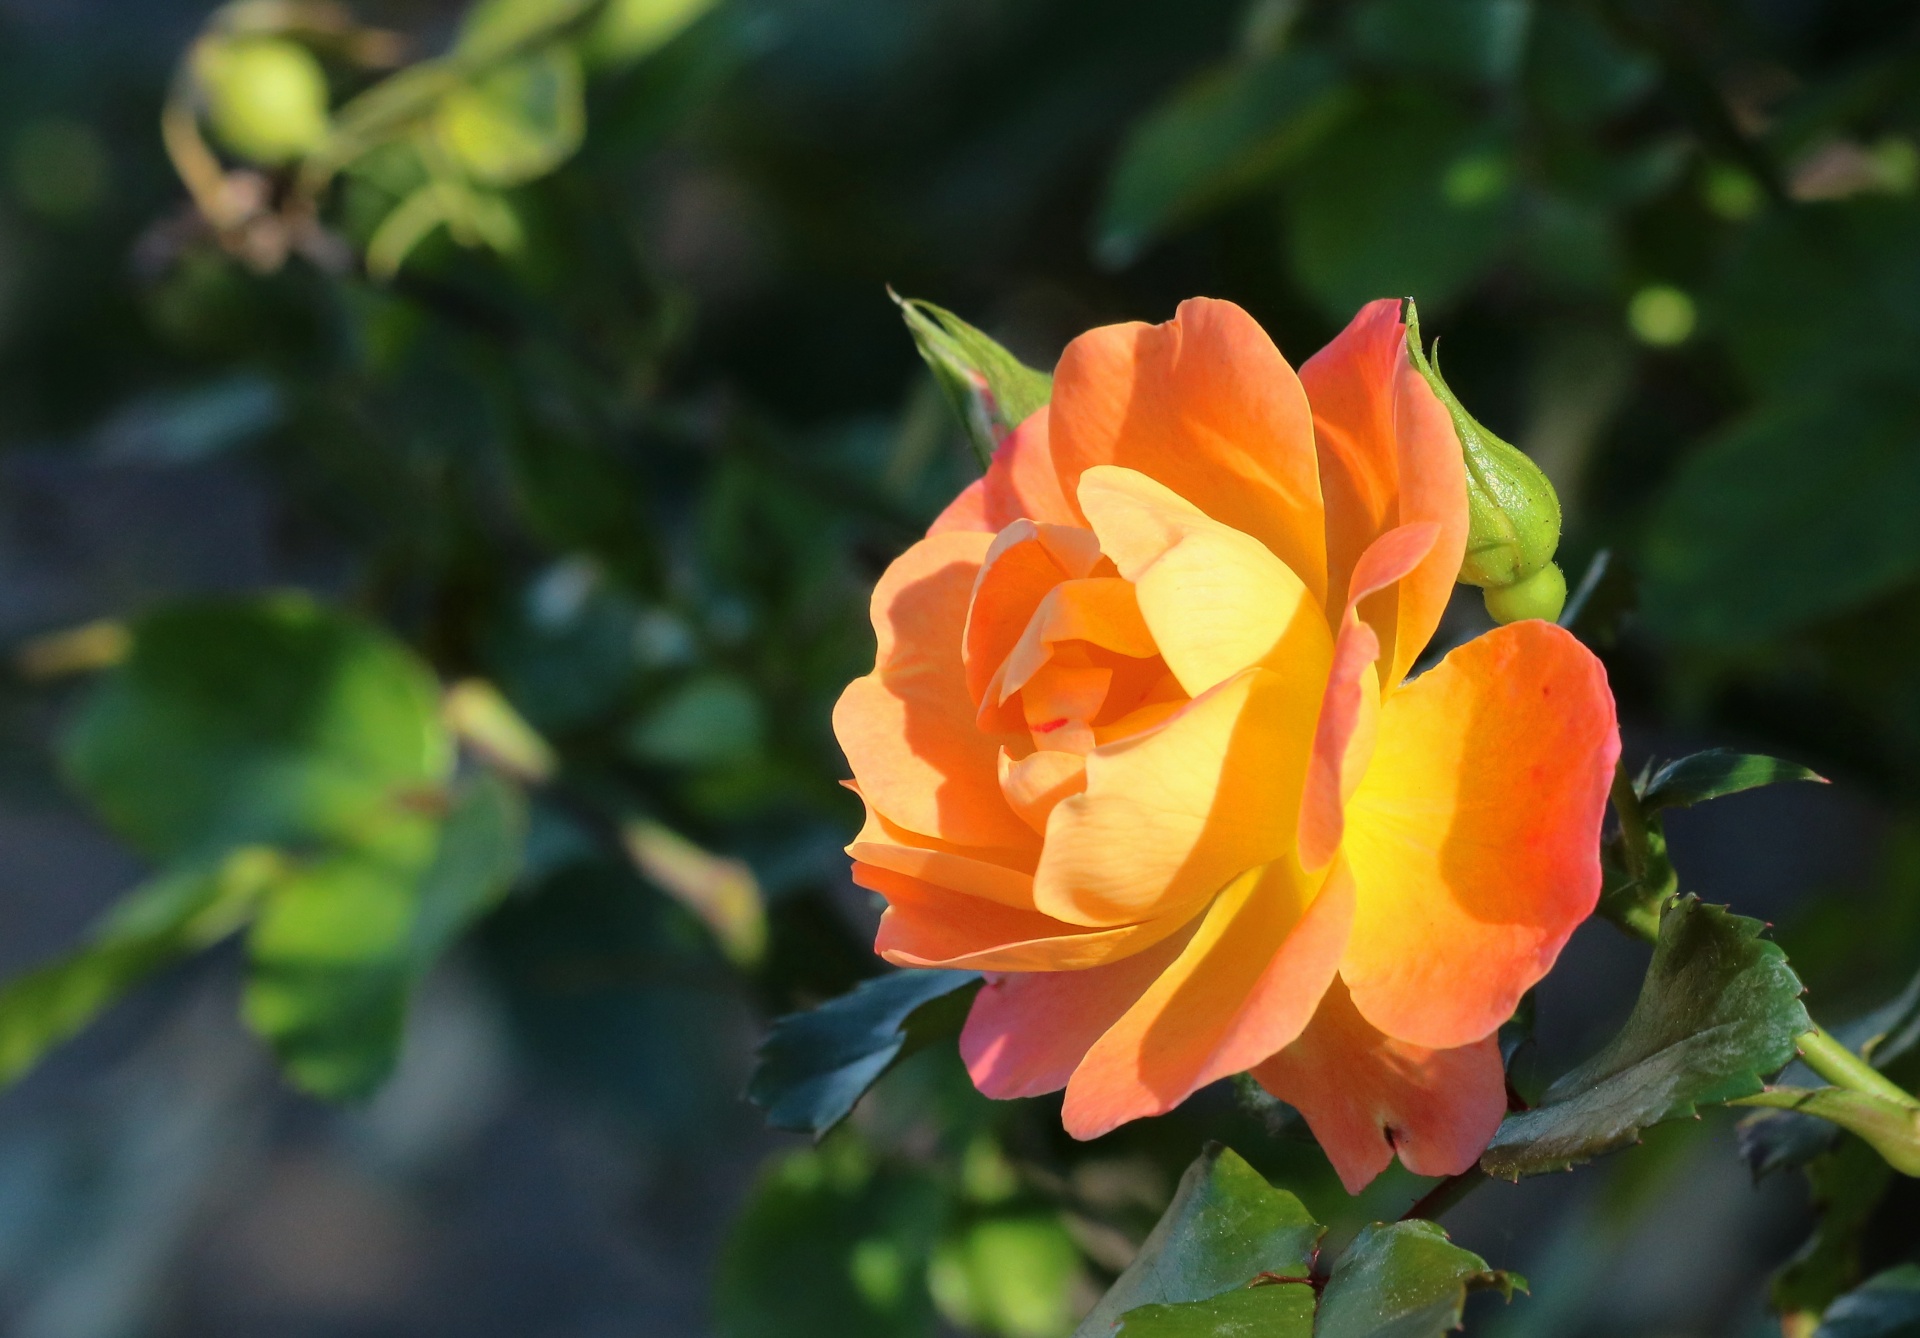 Peach Colored Rose Profile